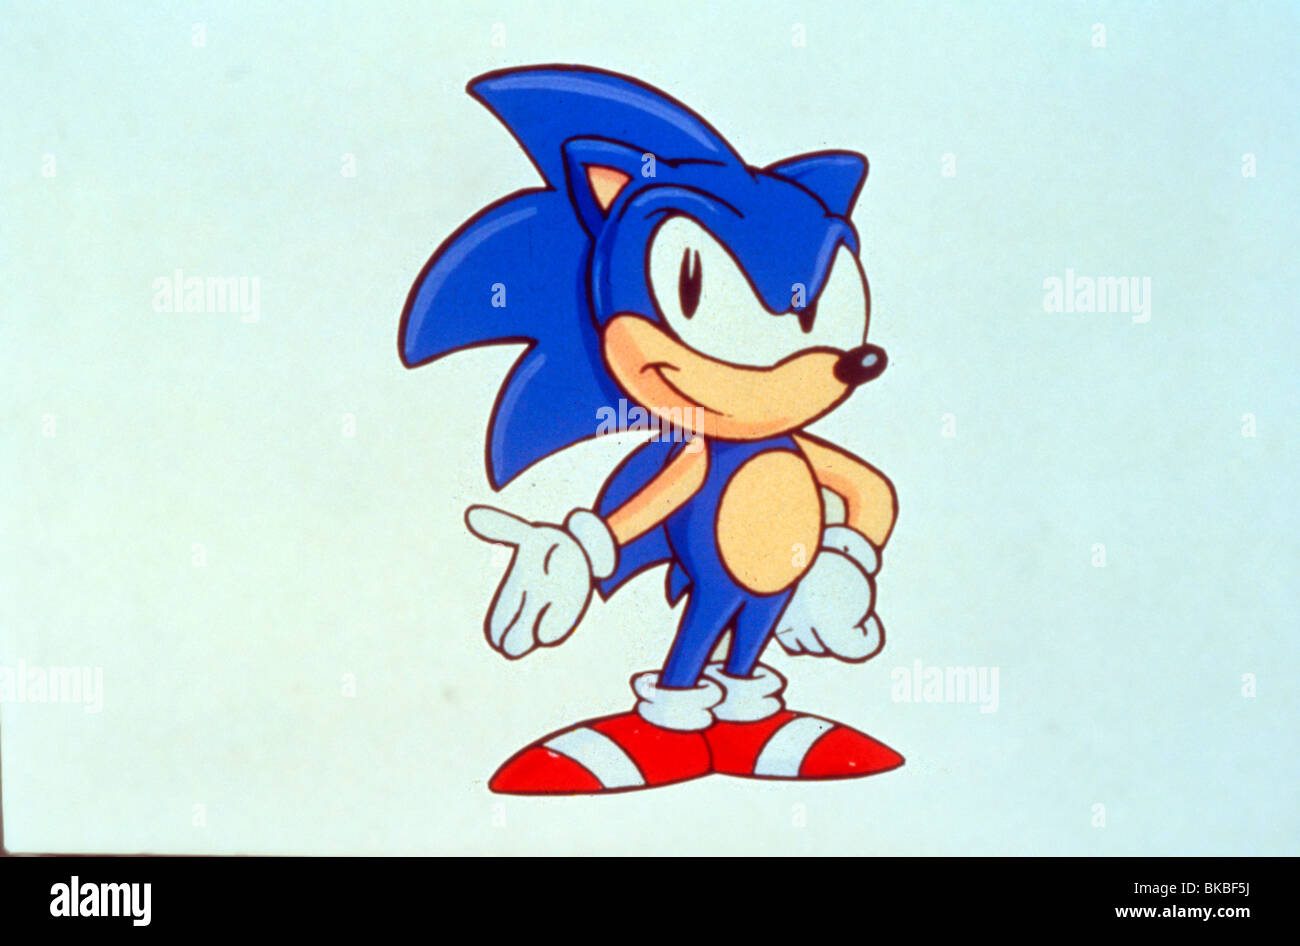 2.904 fotos de stock e banco de imagens de Sonic Hedgehog - Getty Images